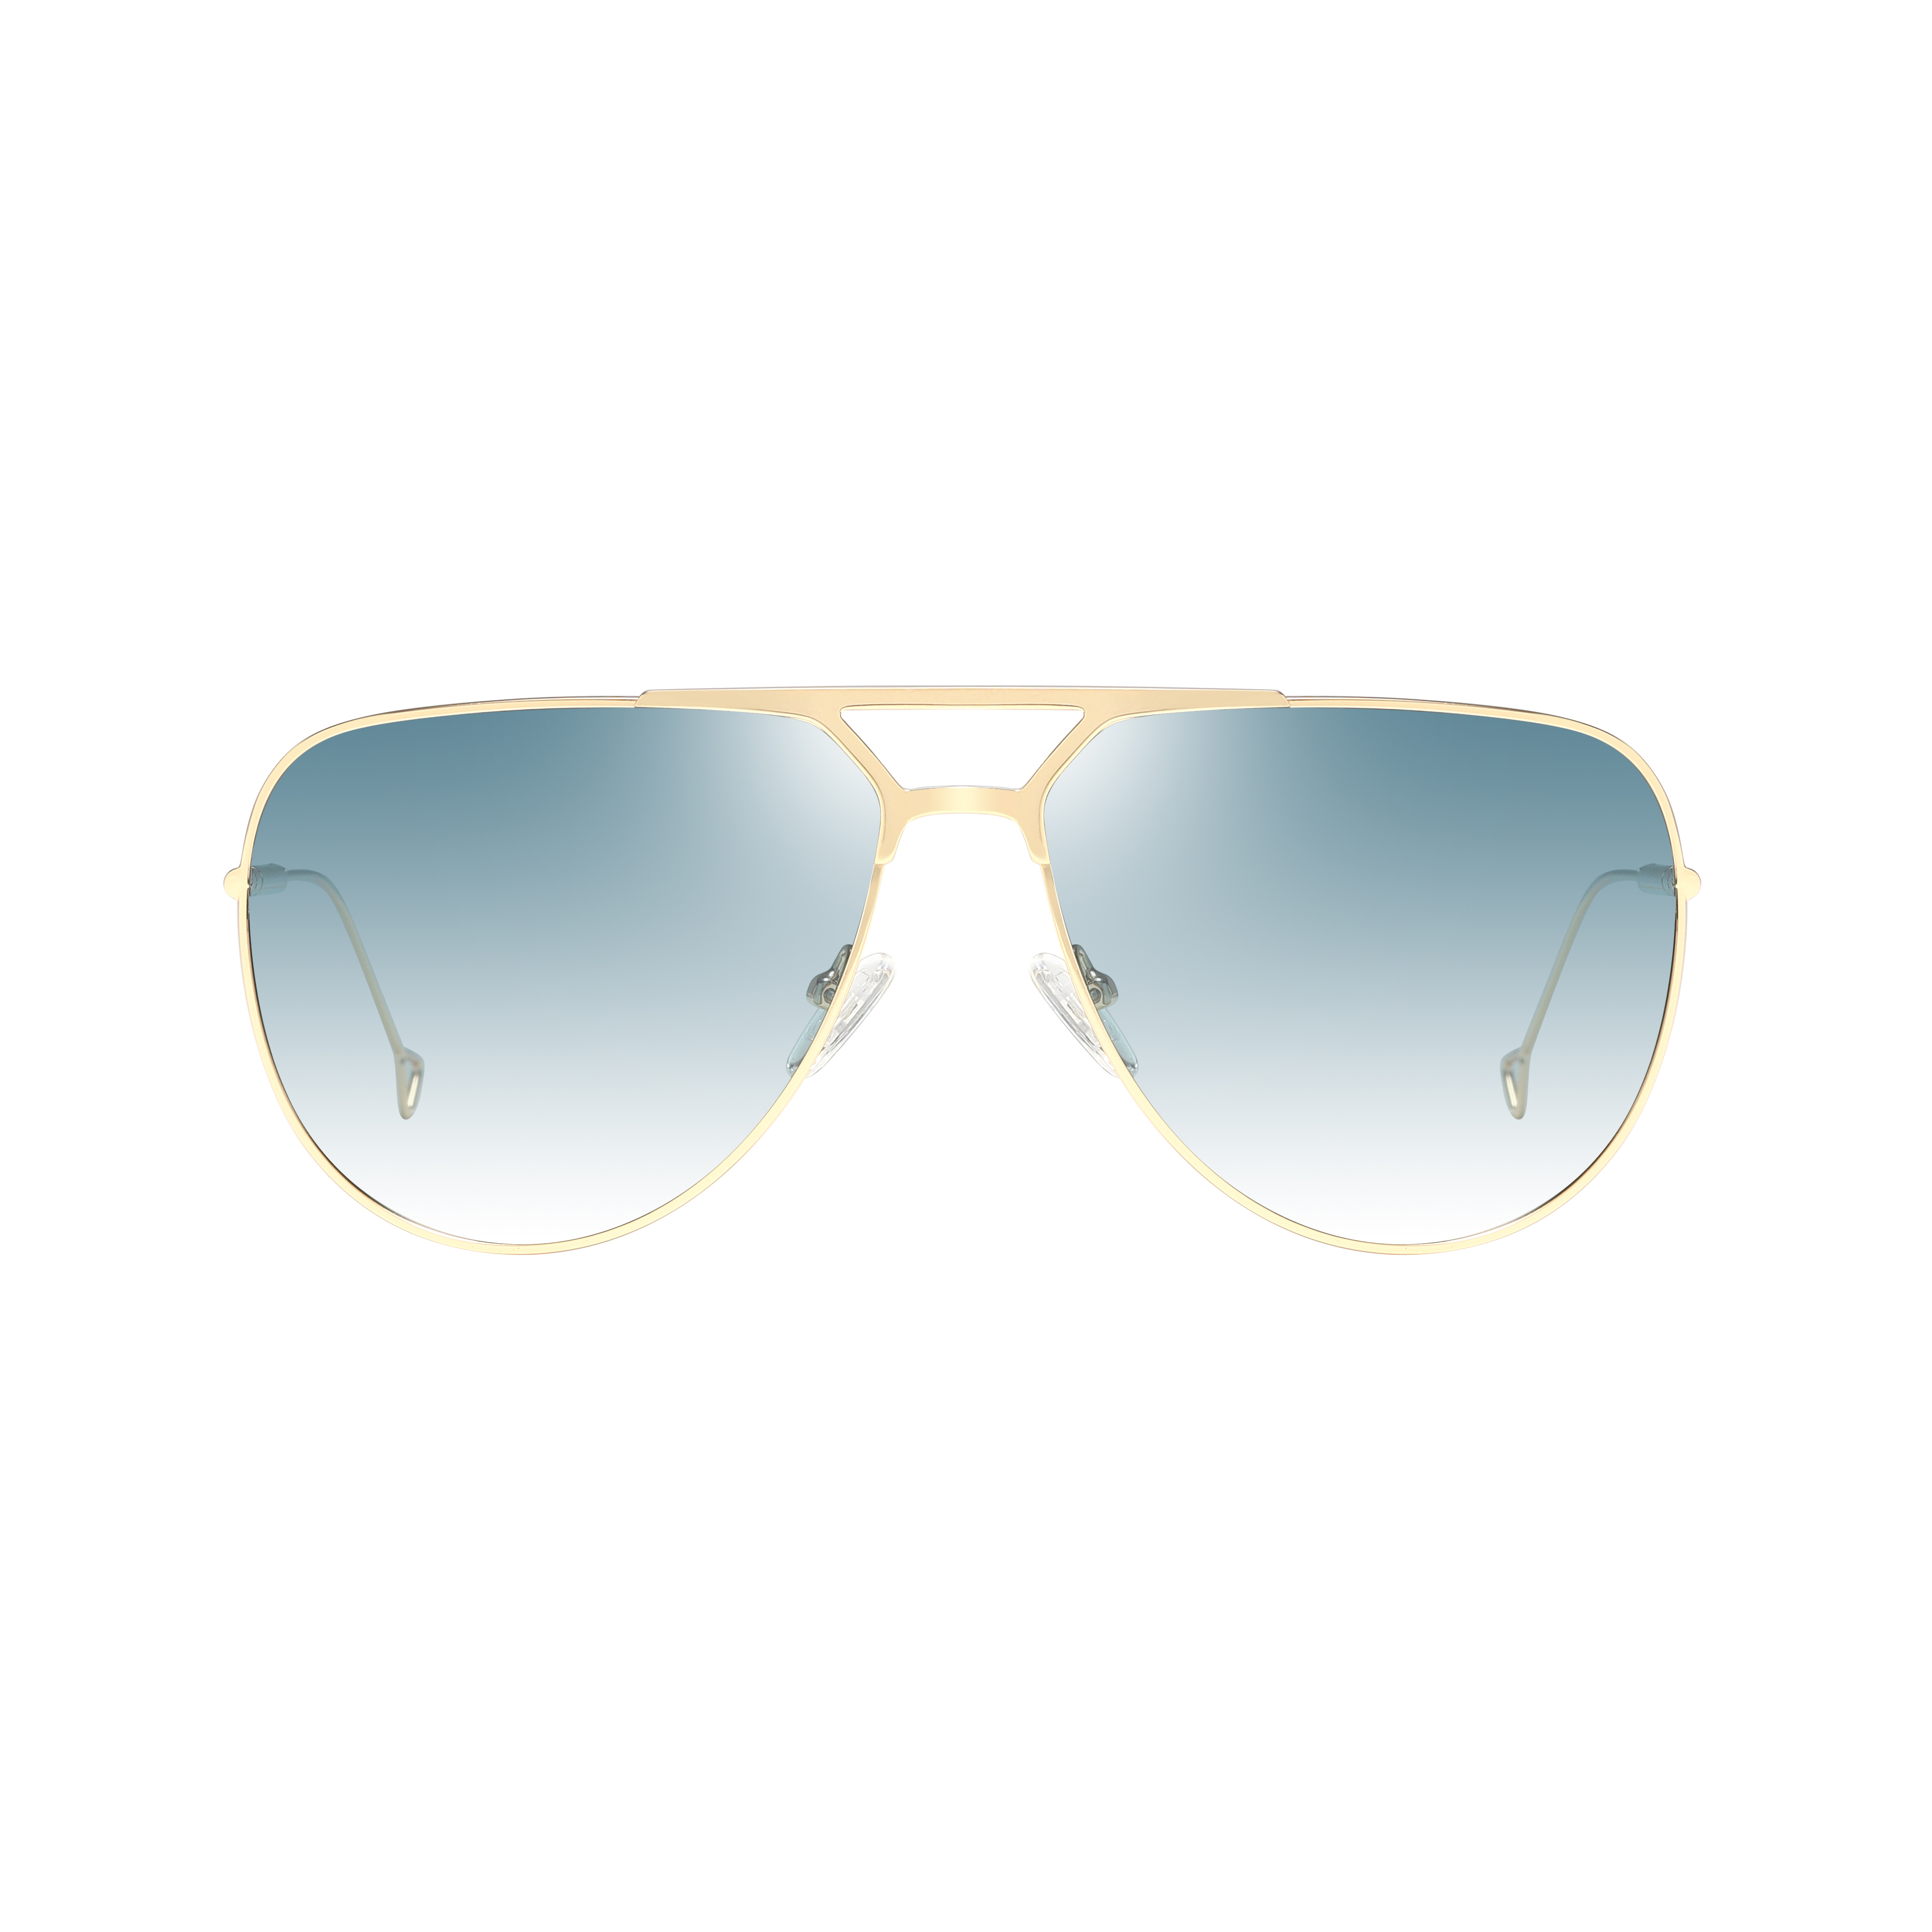 Eugenia de alta calidad precio barato Oval Gafas de sol Marca Unisex 2021 Gafas de sol polarizadas